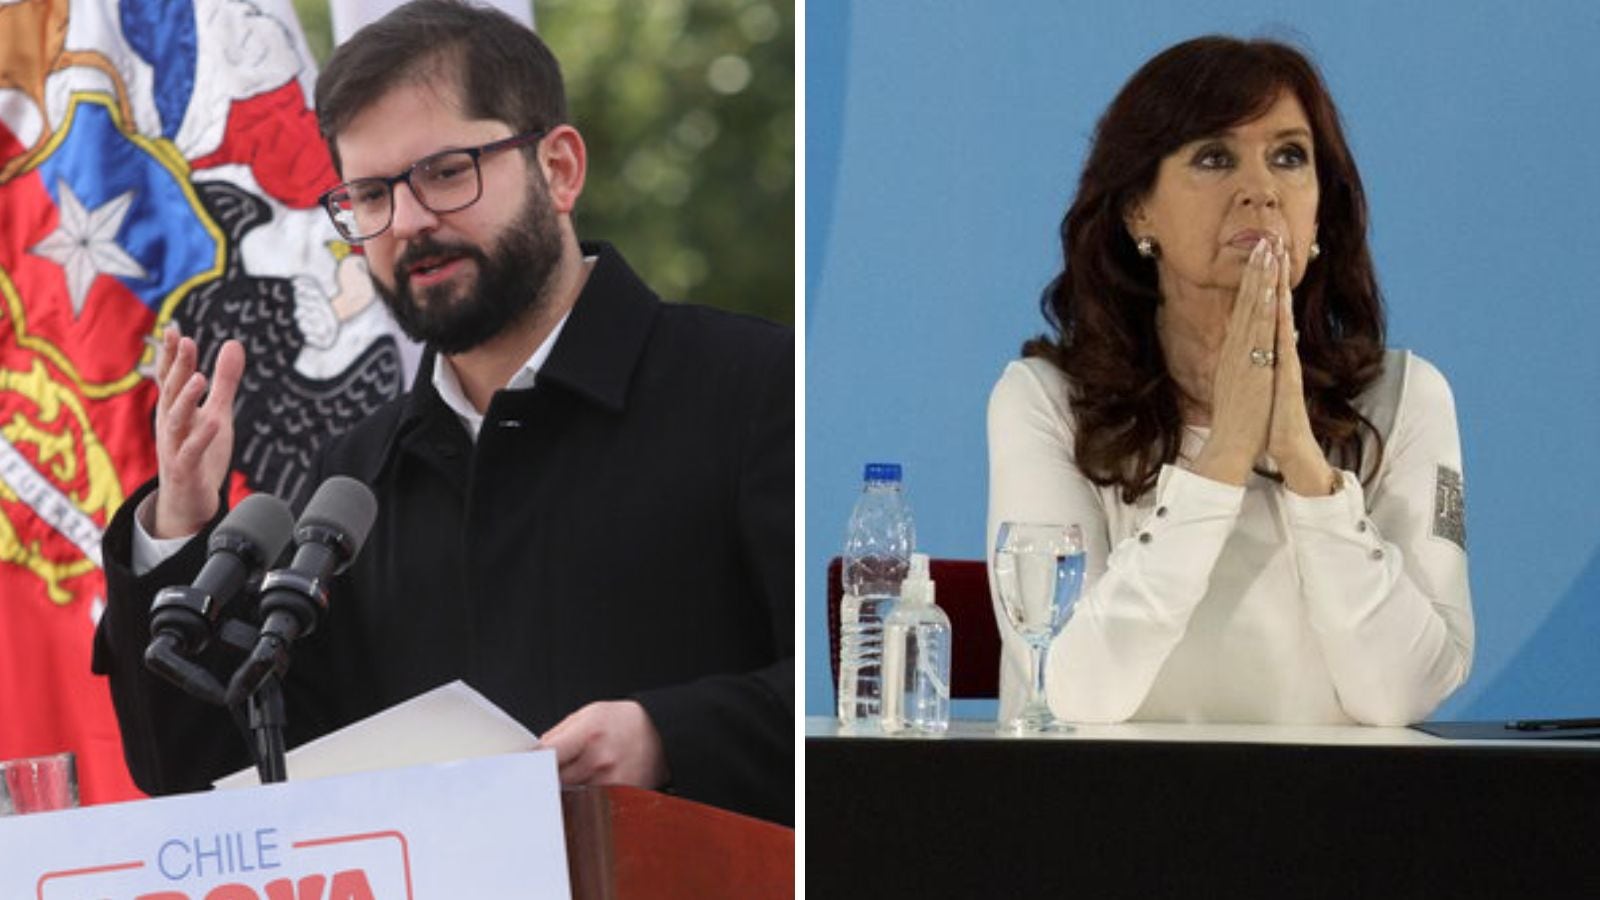 “Merece el repudio y condena de todo el continente”: Presidente Boric condenó ataque a Cristina Fernández